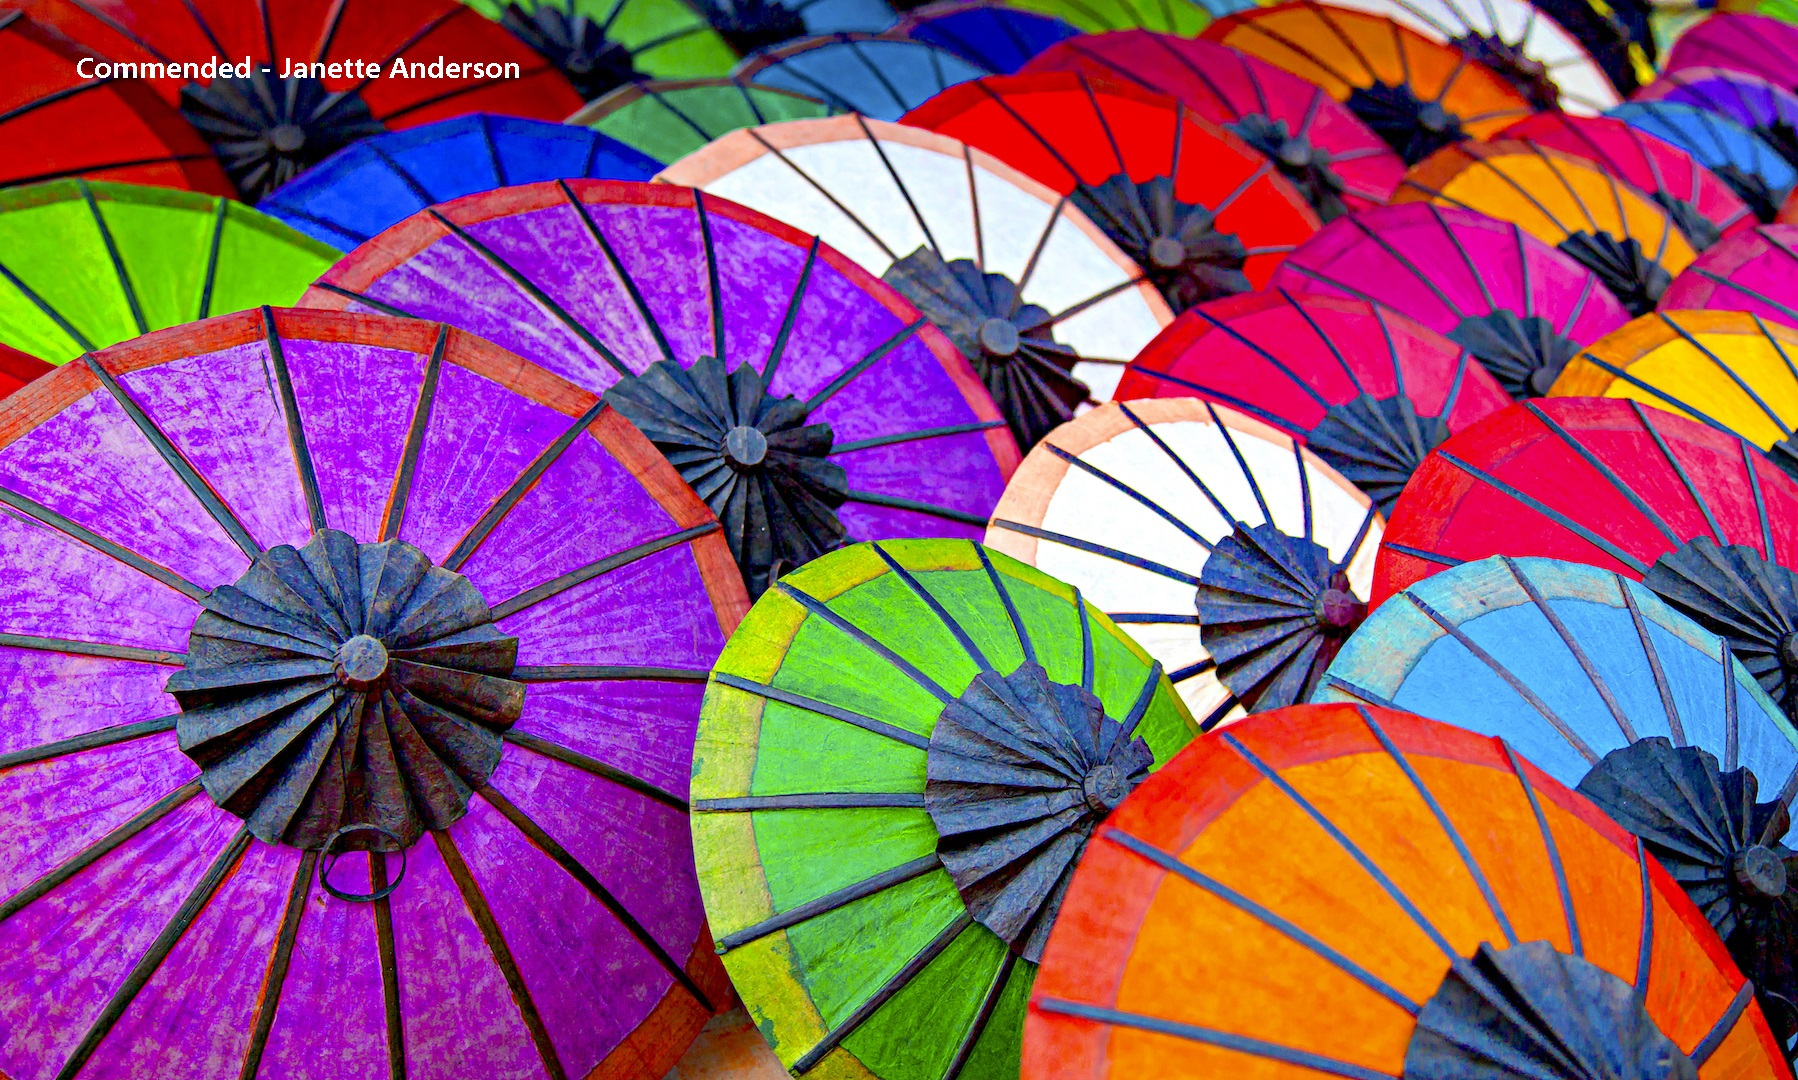 52-0122-Colourful-Umbrellas